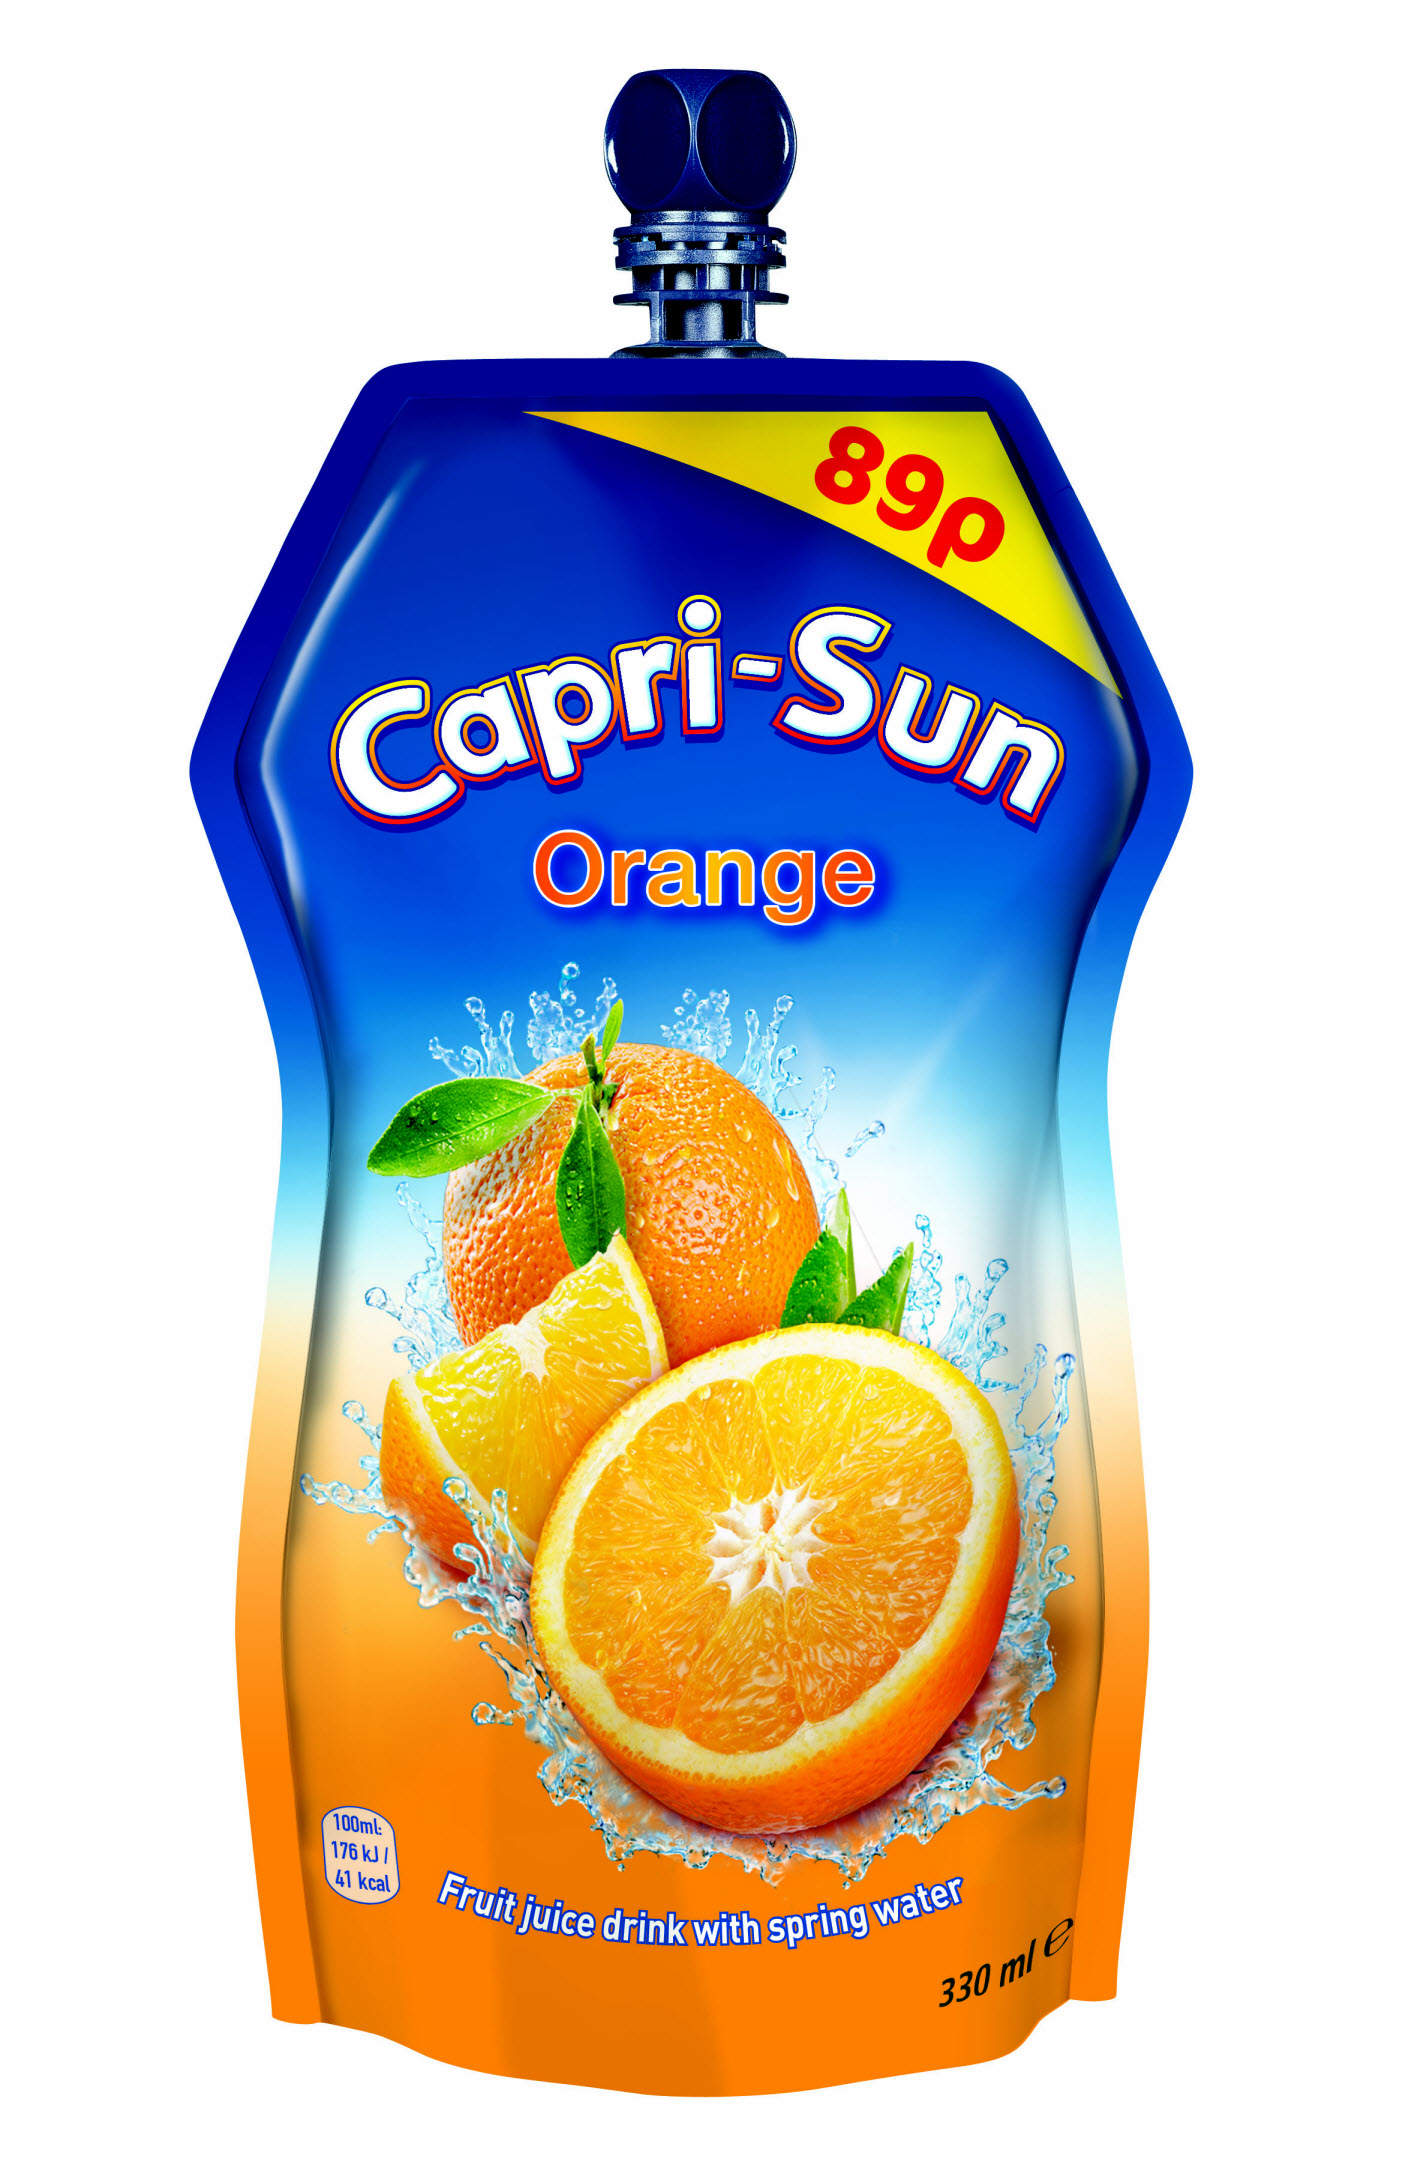 Capri-Sun, New product launches